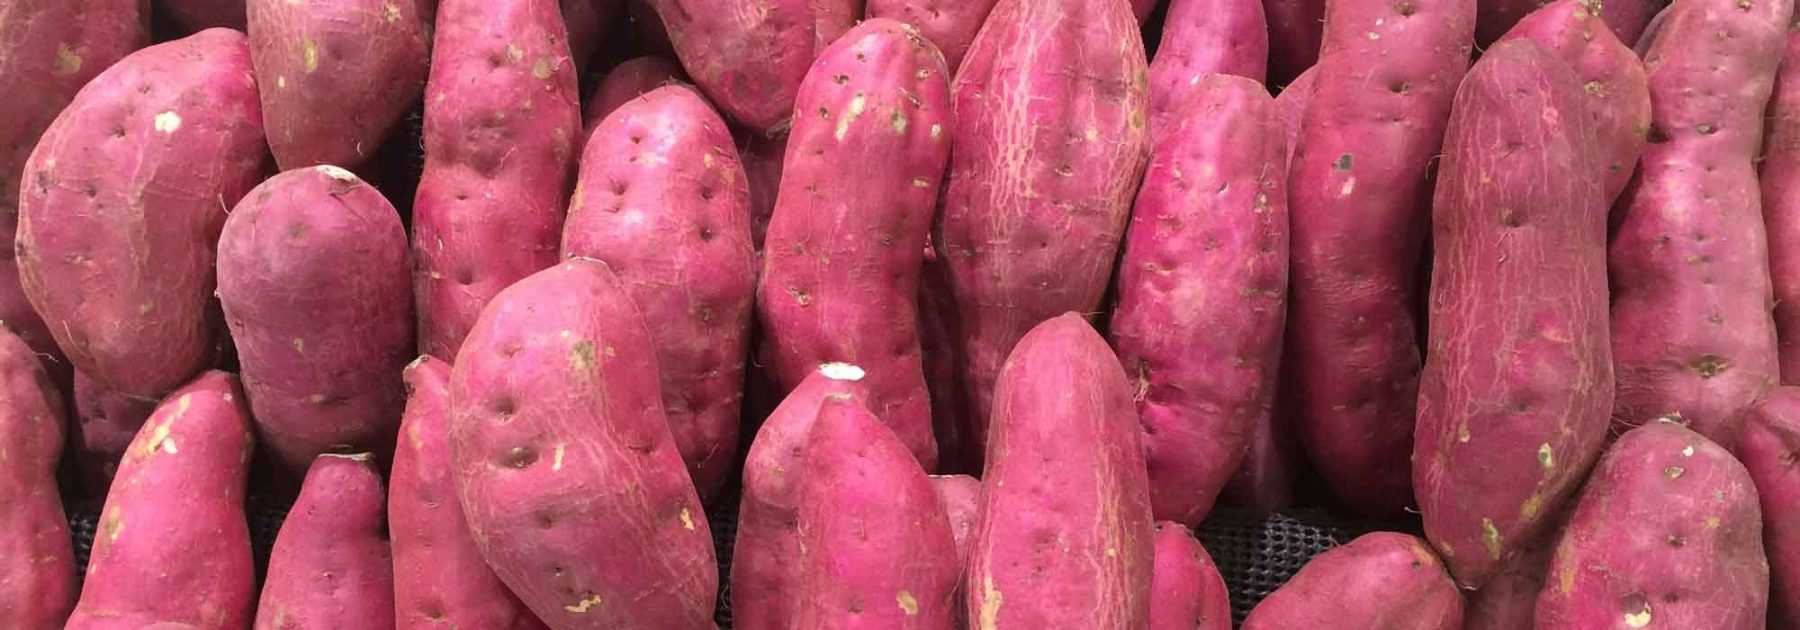 Patate douce : plantation, culture, récolte au potager